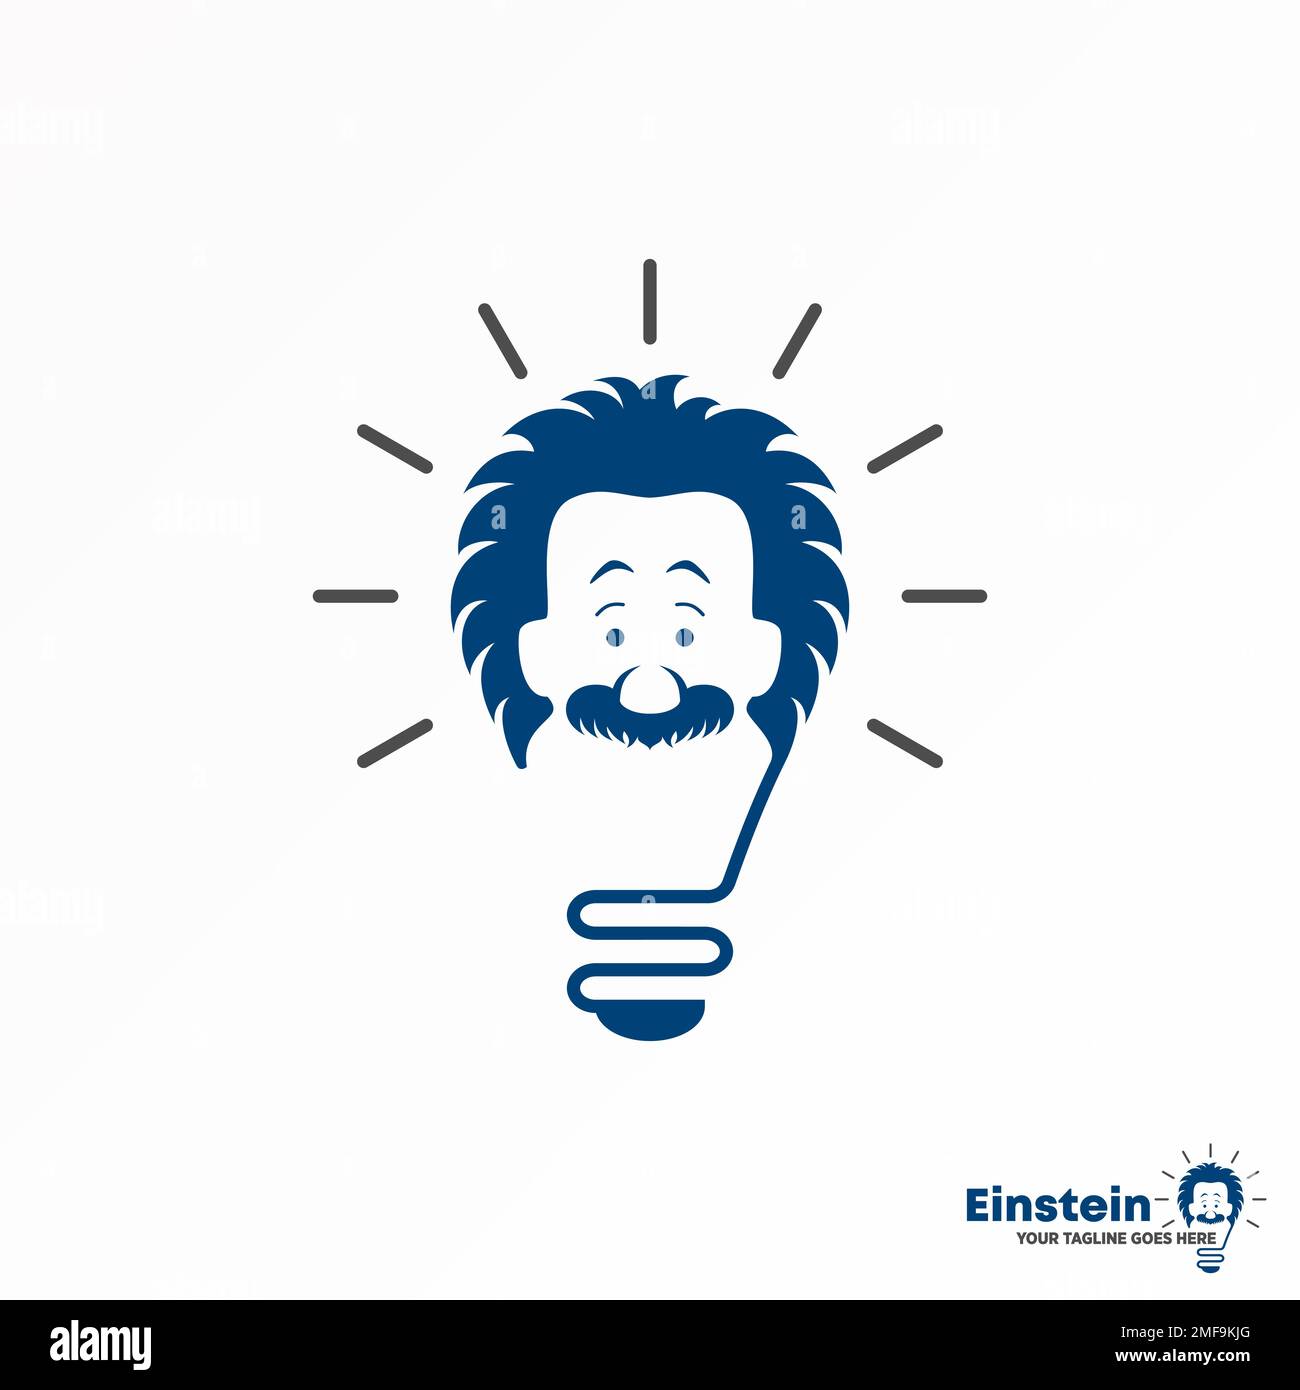 Lampe oder Beleuchtung mit Einstein Gesichtsbild Grafiksymbol Logo Design abstraktes Konzept Vektormaterial. Im Zusammenhang mit Intelligenz oder Bildung Stock Vektor